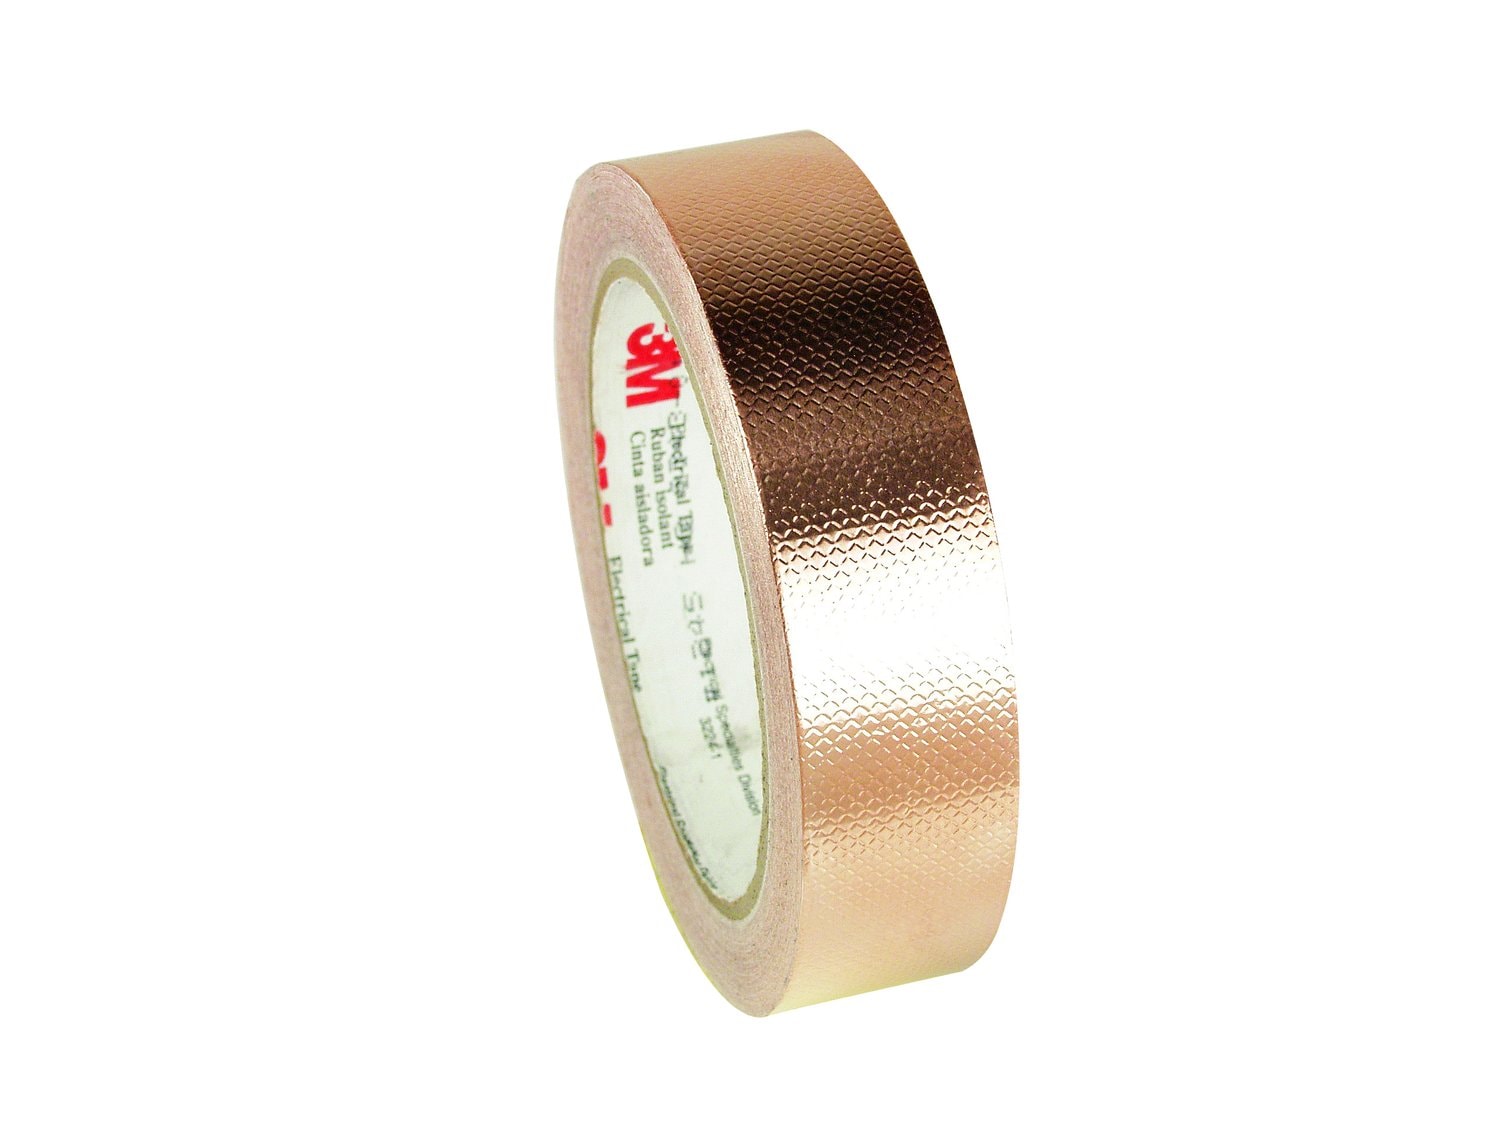 7010350300 - 3M Embossed Copper Foil EMI Shielding Tape 1245, 2-1/2 in x 18 yd, 3 in
Paper Core, 5 Rolls/Case